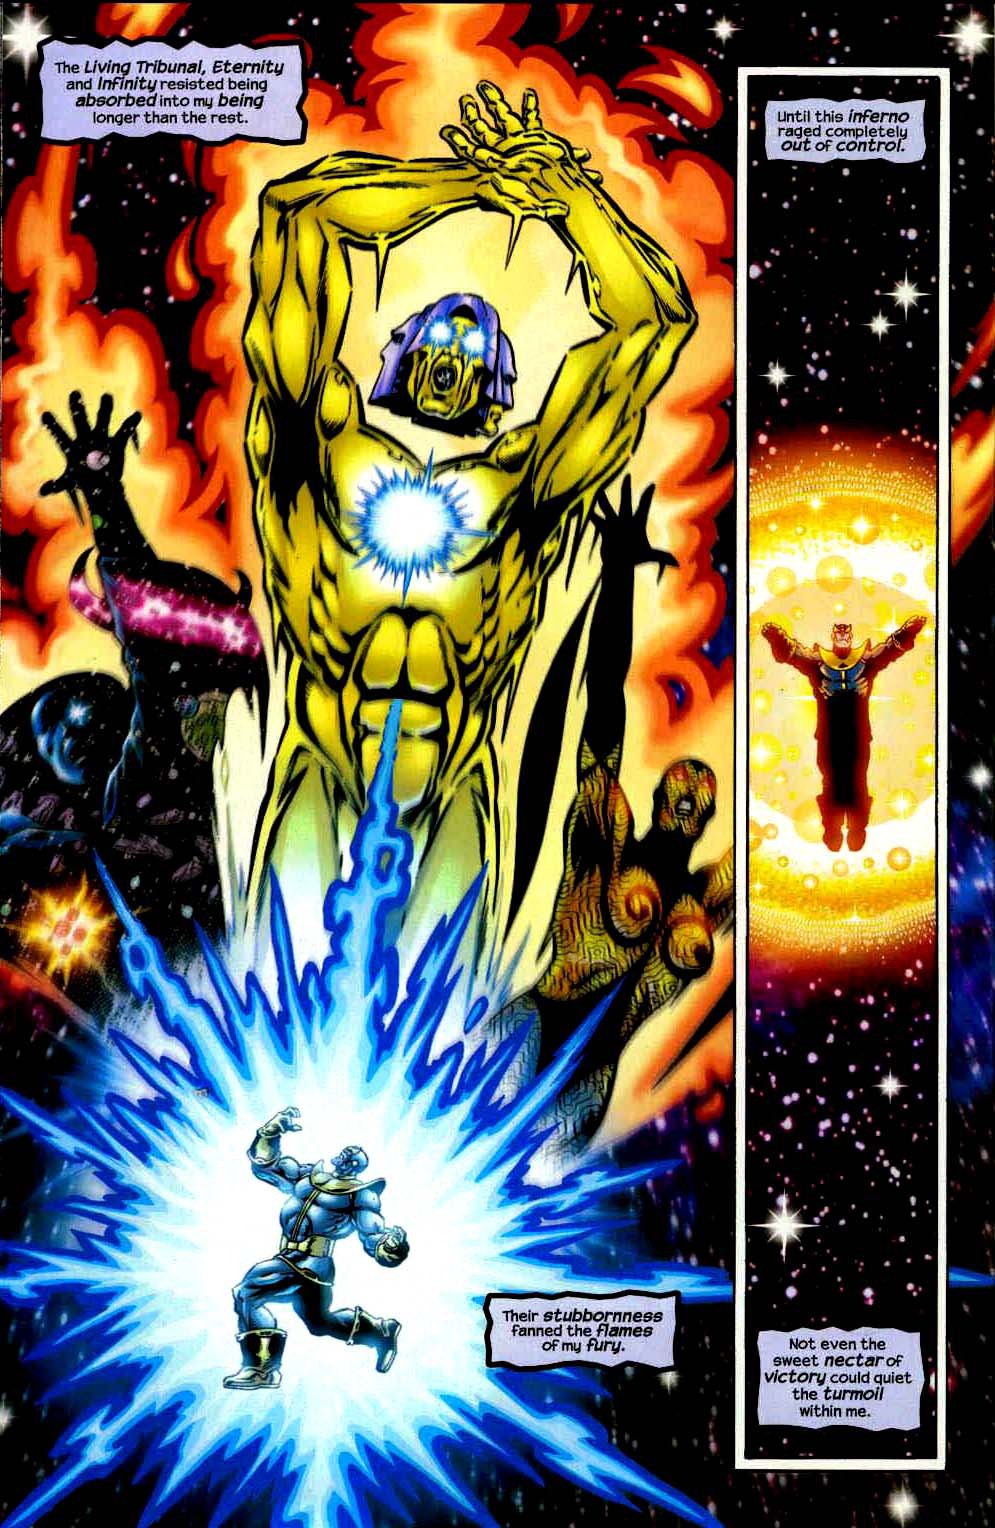 Heart of the Universe, bảo vật vũ trụ giúp Thanos trở thành Chúa Trời, sở hữu quyền năng vượt xa Găng Tay Vô Cực - Ảnh 14.